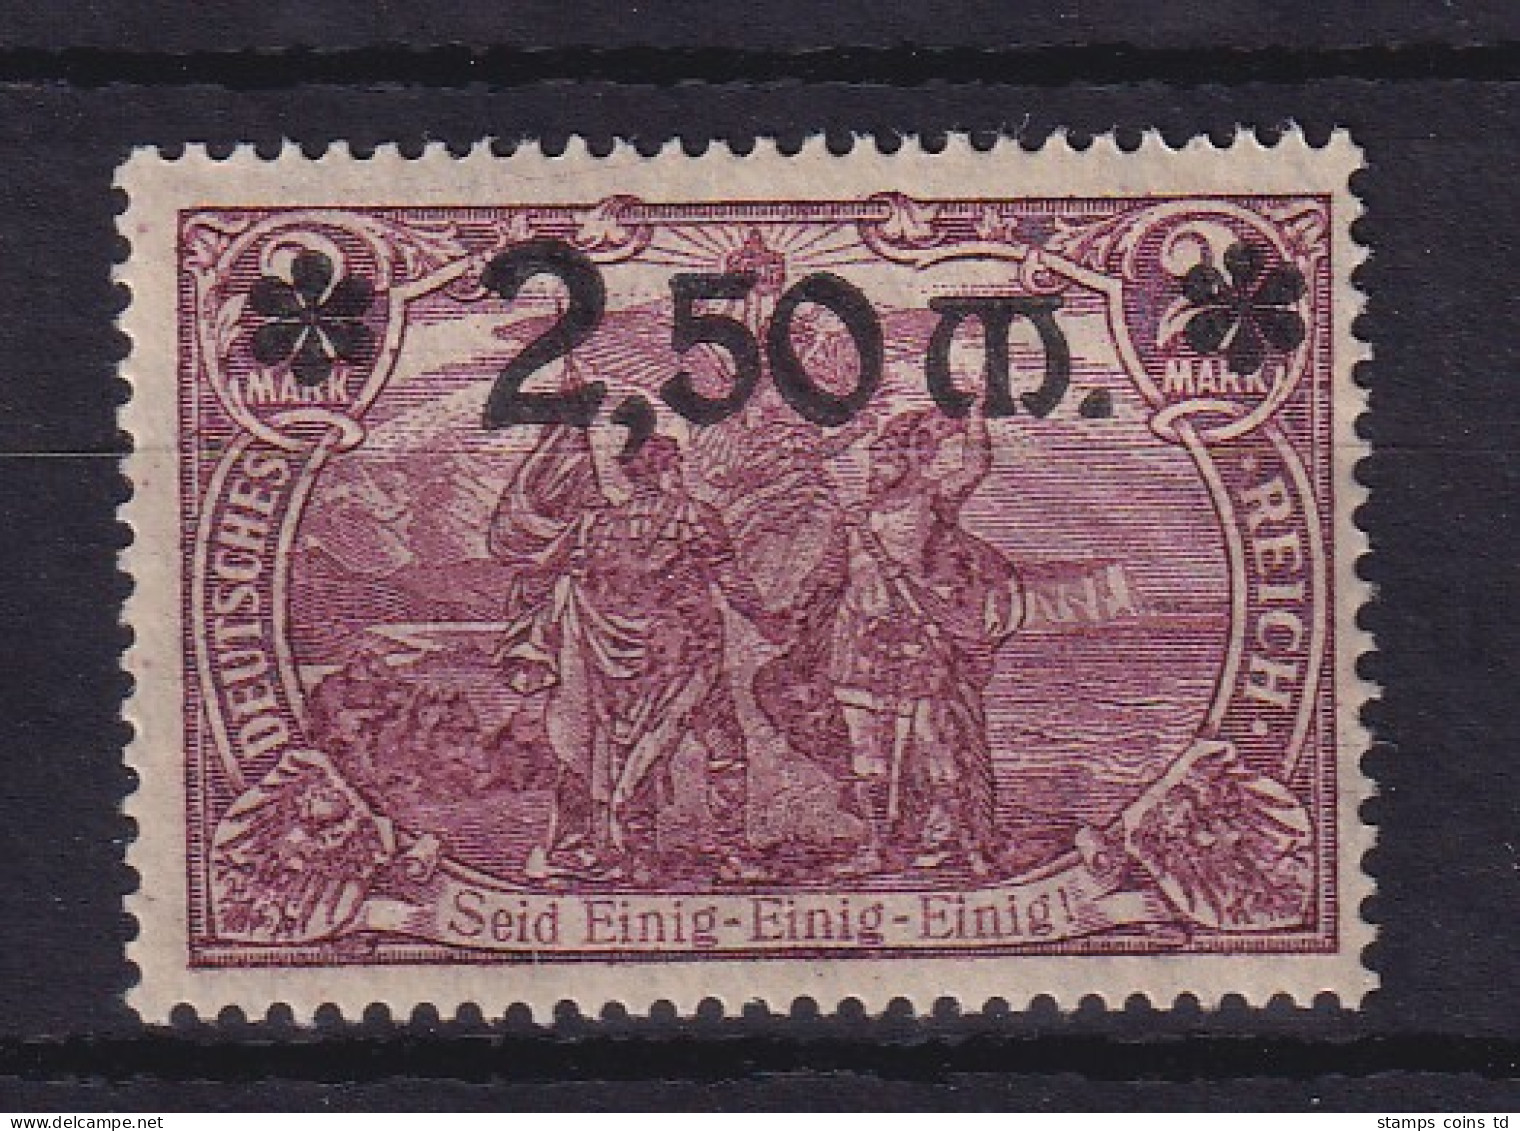 Dt. Reich 1920 Wertaufdruck 2,50 M  Mi.-Nr. 118a Postfrisch ** - Unused Stamps